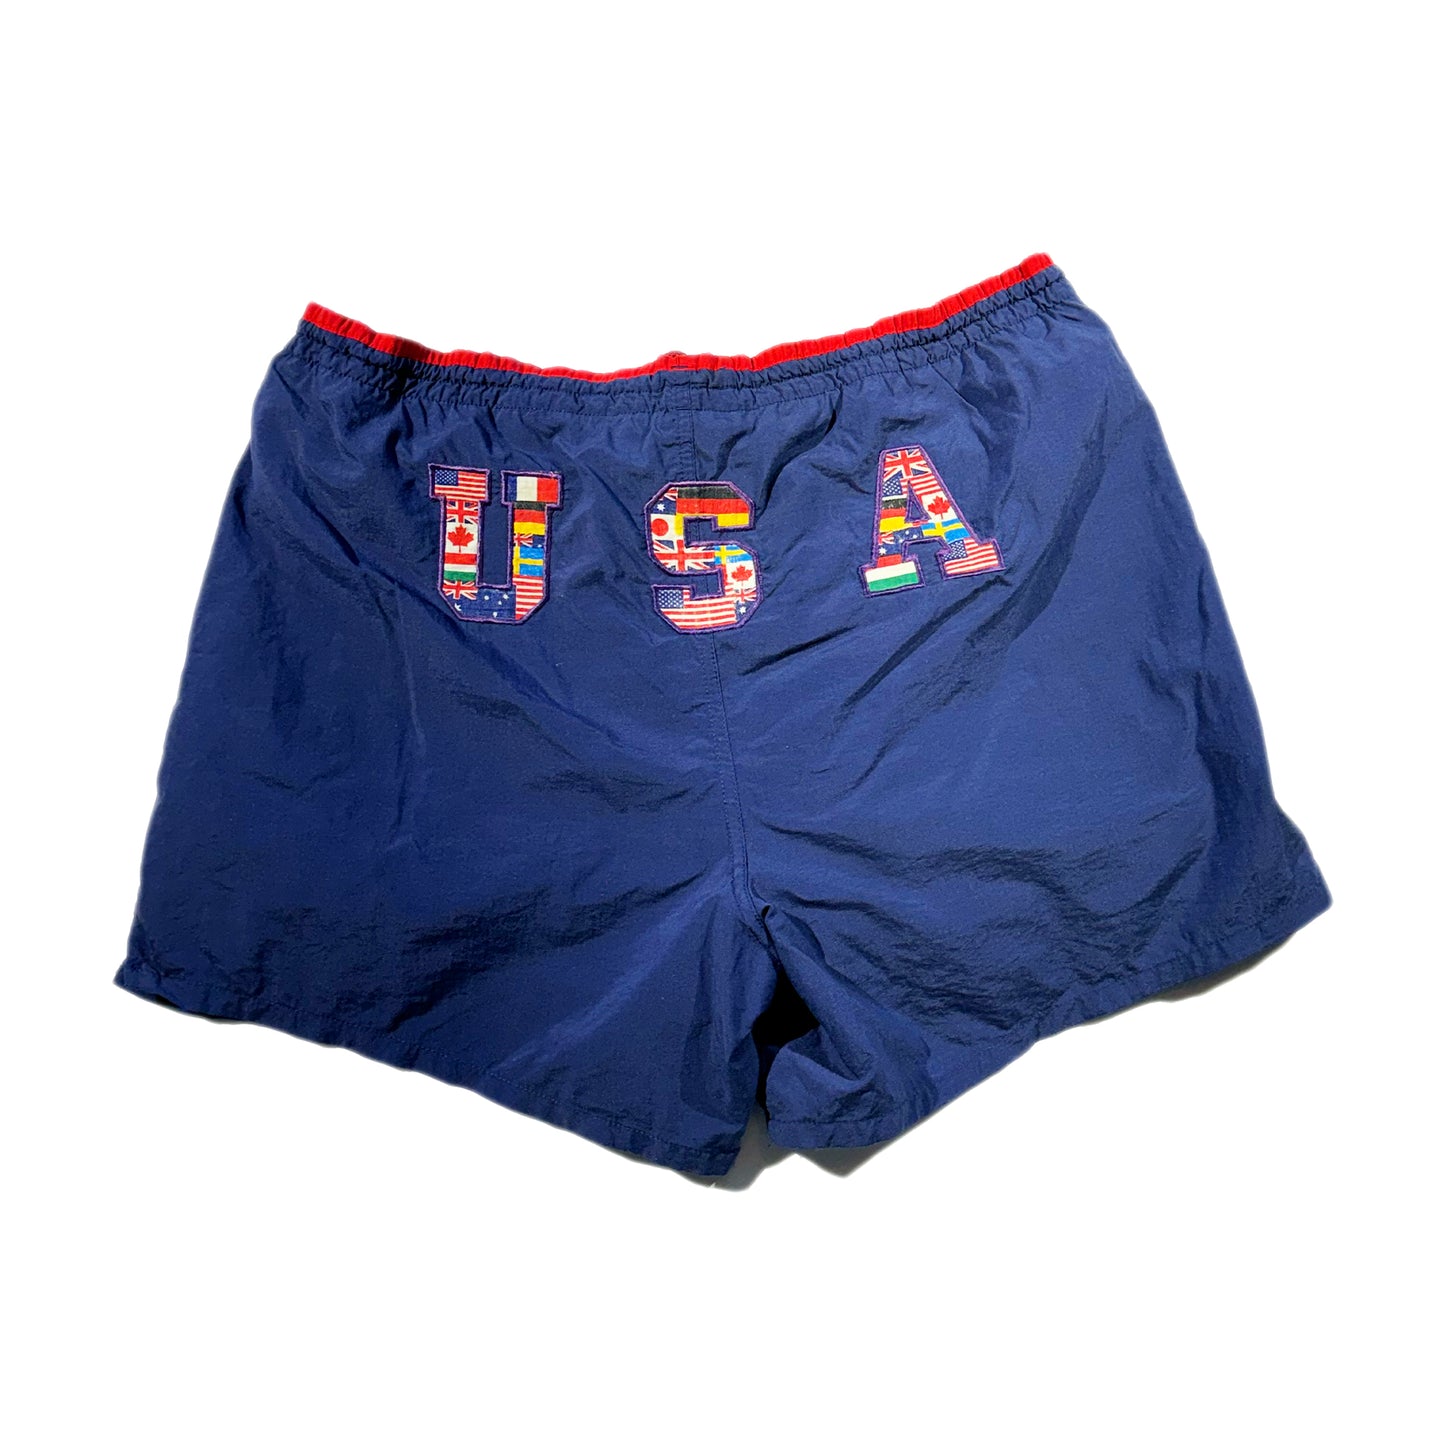 Vintage USA Olympic Shorts Swim Trunks Atlanta 1996 Speedo